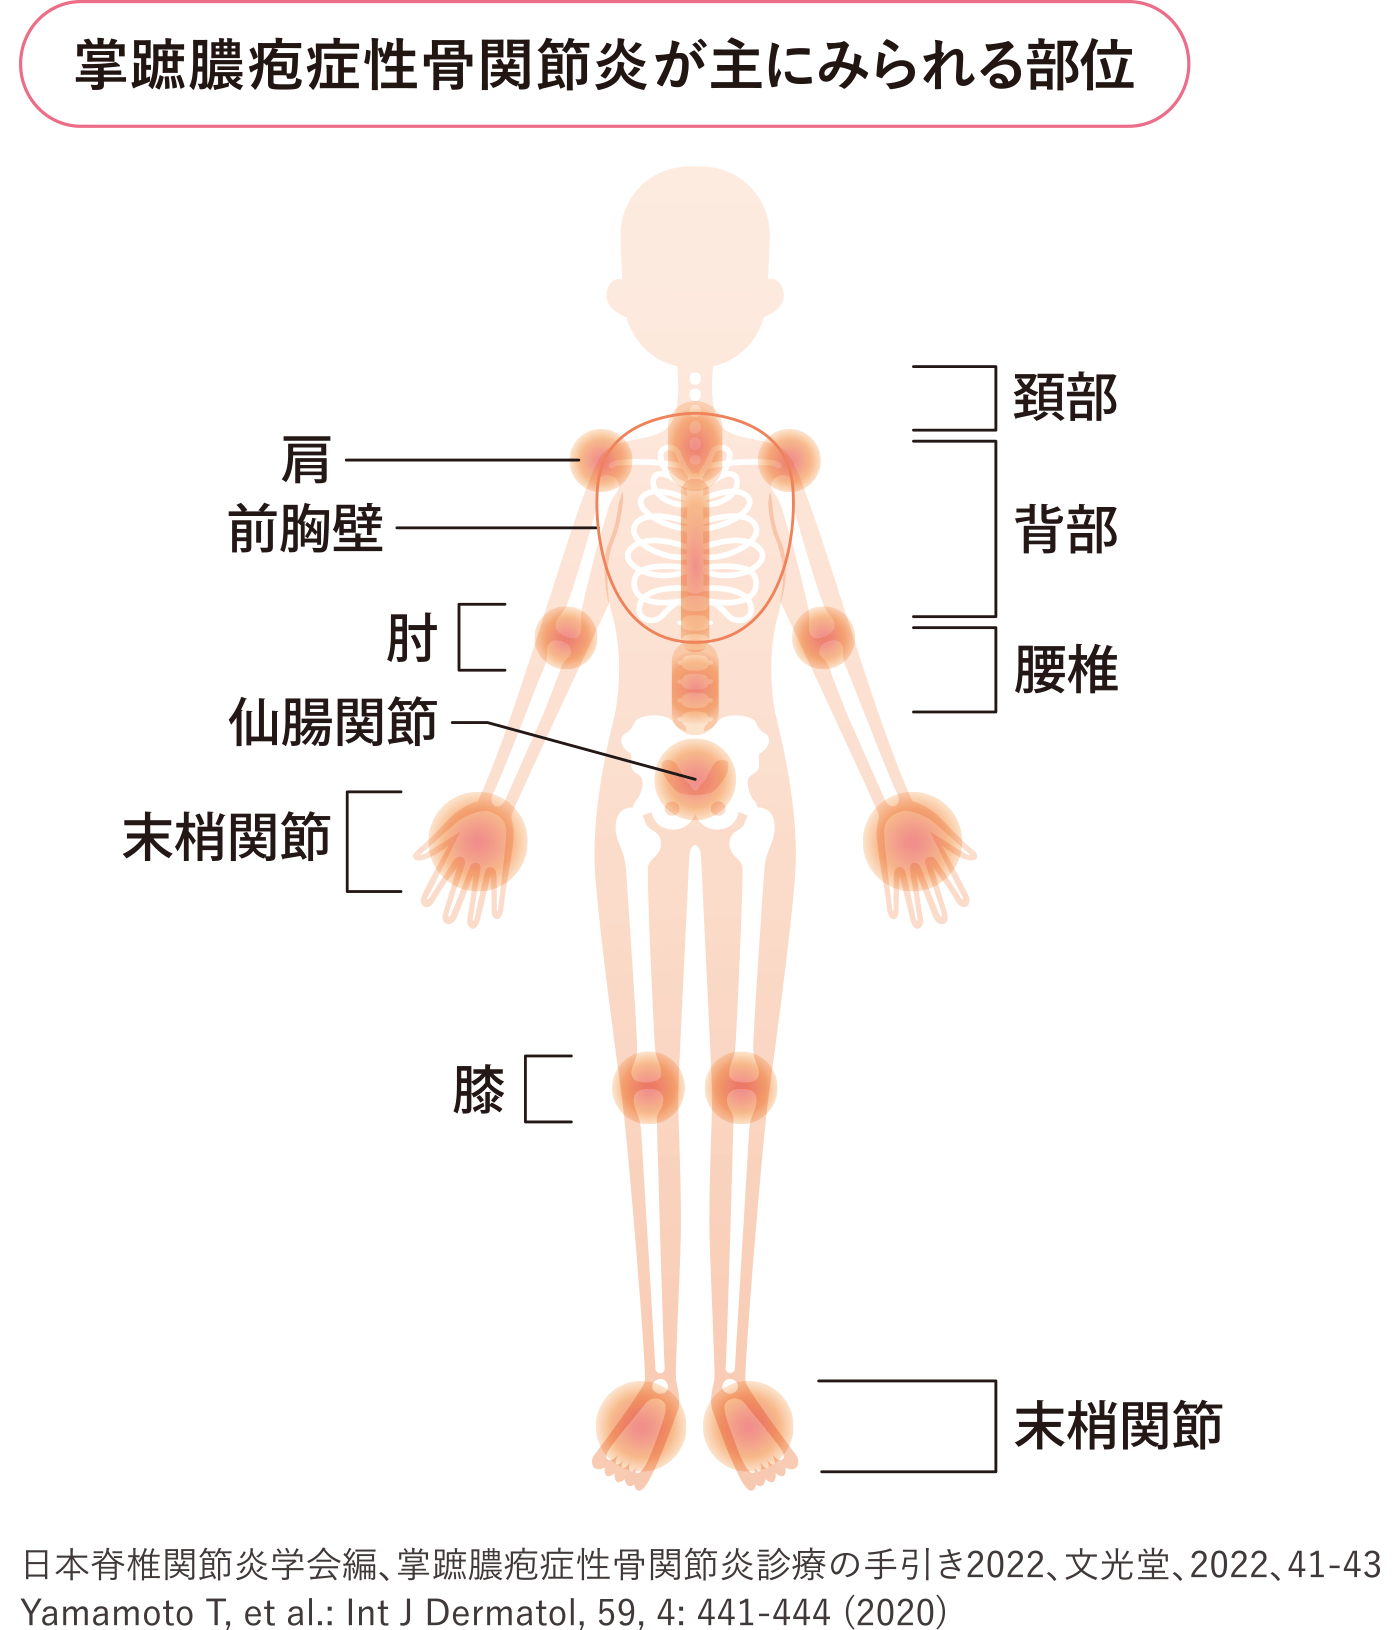 イラスト：掌蹠膿疱症性骨関節炎が主にみられる部位（頚部・背部・腰椎・肩・前胸壁・肘・仙腸関節・手の末梢関節・膝・足の末梢関節）を示した図。
出典：日本脊椎関節炎学会編、掌蹠膿疱症性骨関節炎診療の手引き2022、文光堂、2022、41-43
Yamamoto T, et al.: Int J Dermatol, 59, 4: 441-444 (2020)